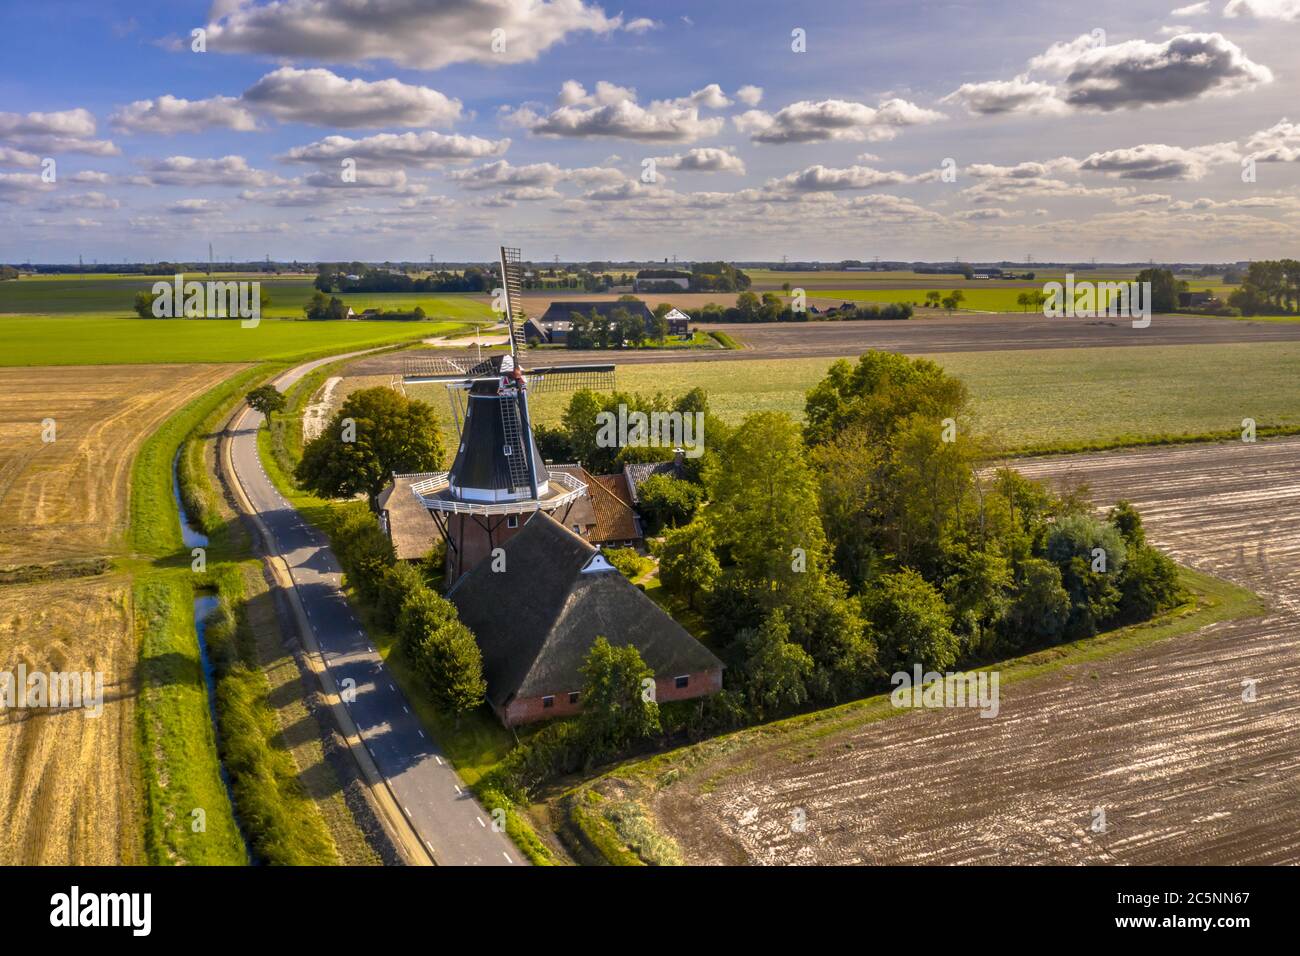 Vista aérea de la pequeña aldea holandesa con histórico molino de madera en el paisaje rural agrícola, Groningen, países Bajos. Foto de stock